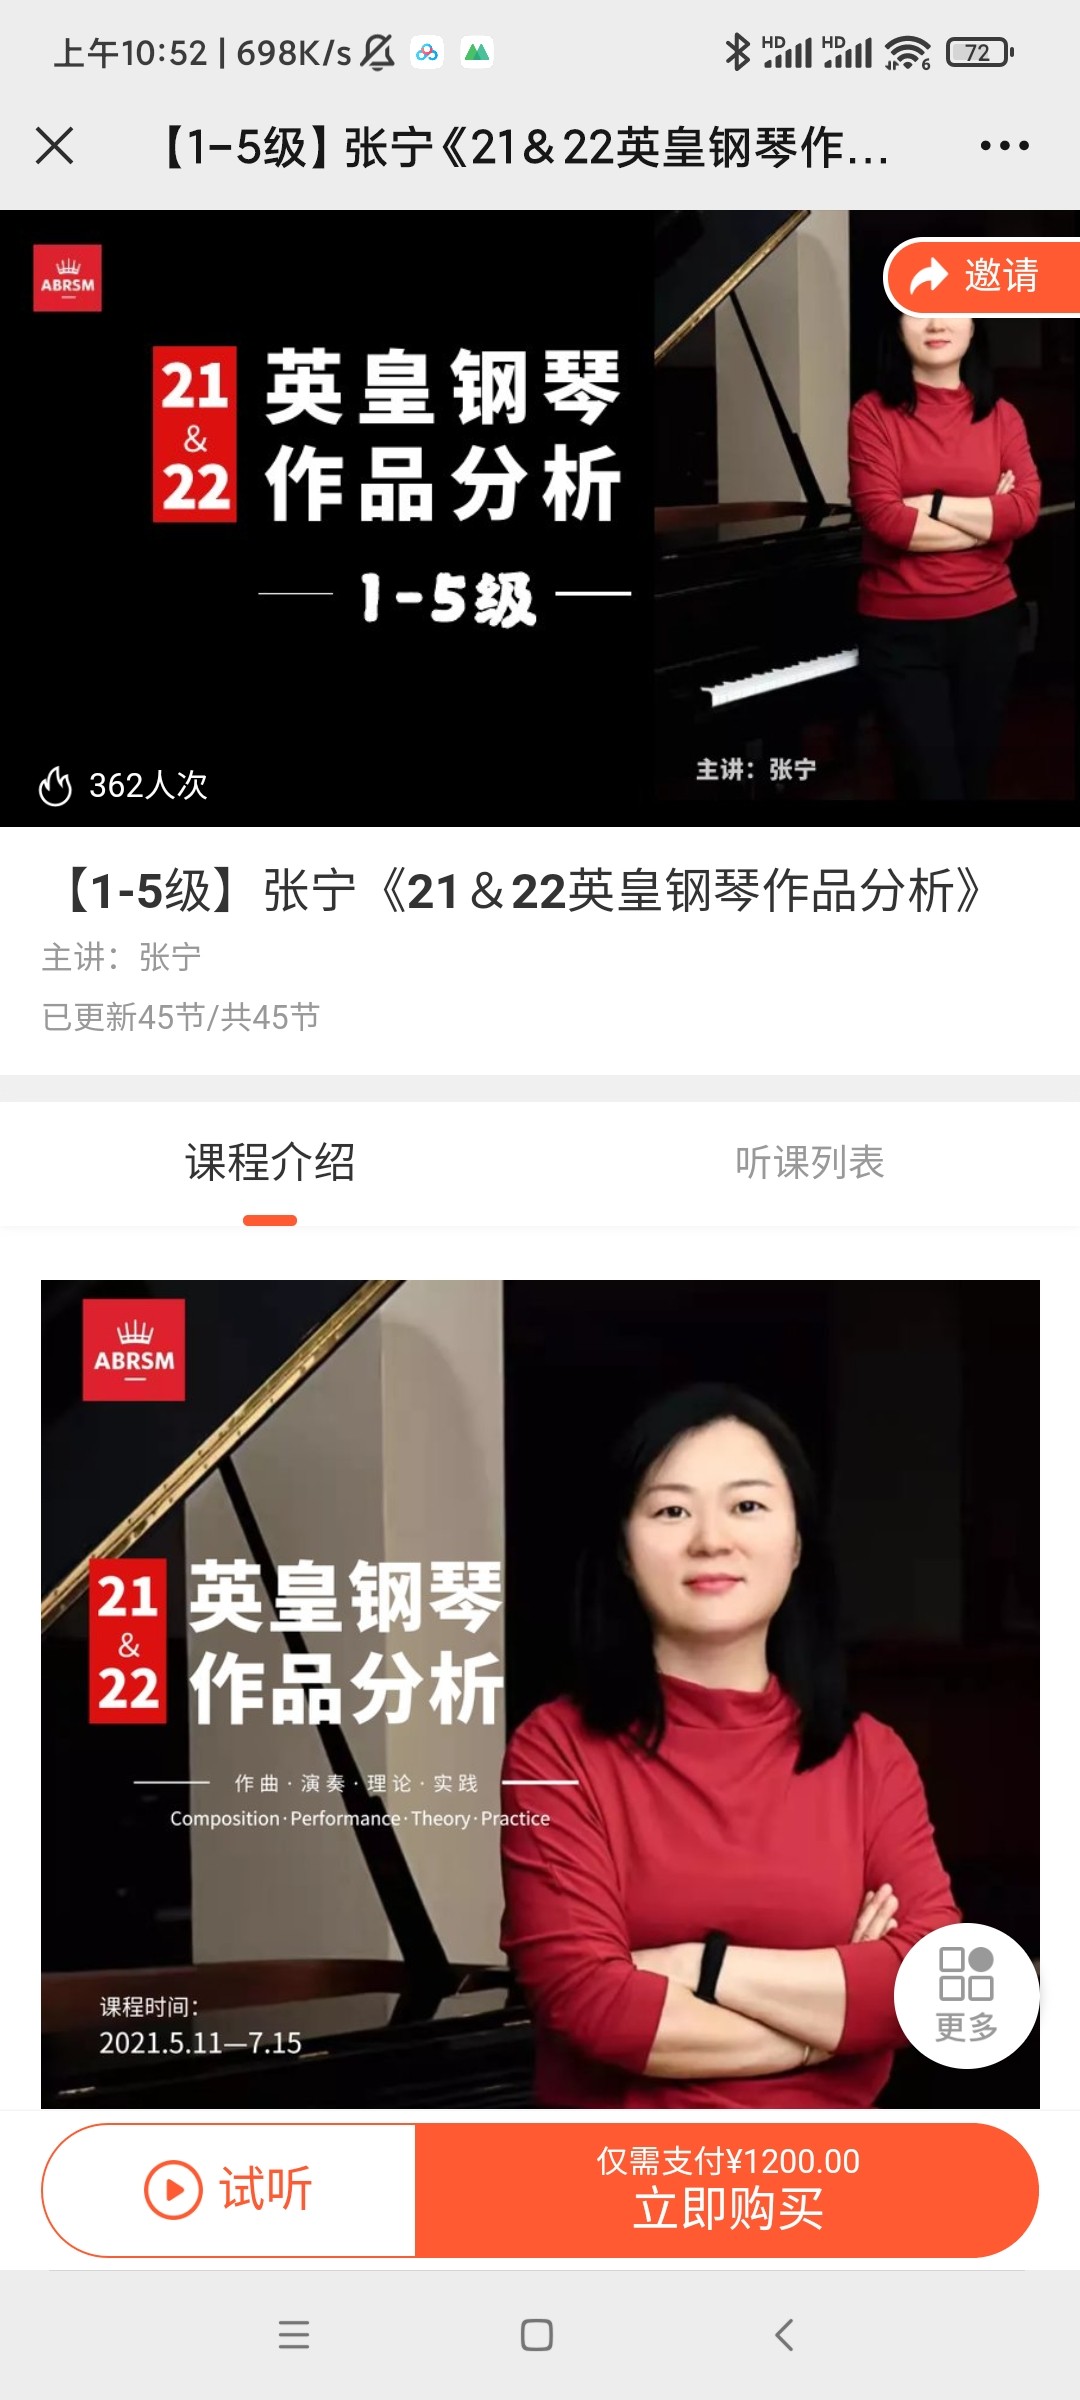 【20[红包]·S3890[不齐]【1-5级】张宁《21＆22英皇钢琴作品分析》】